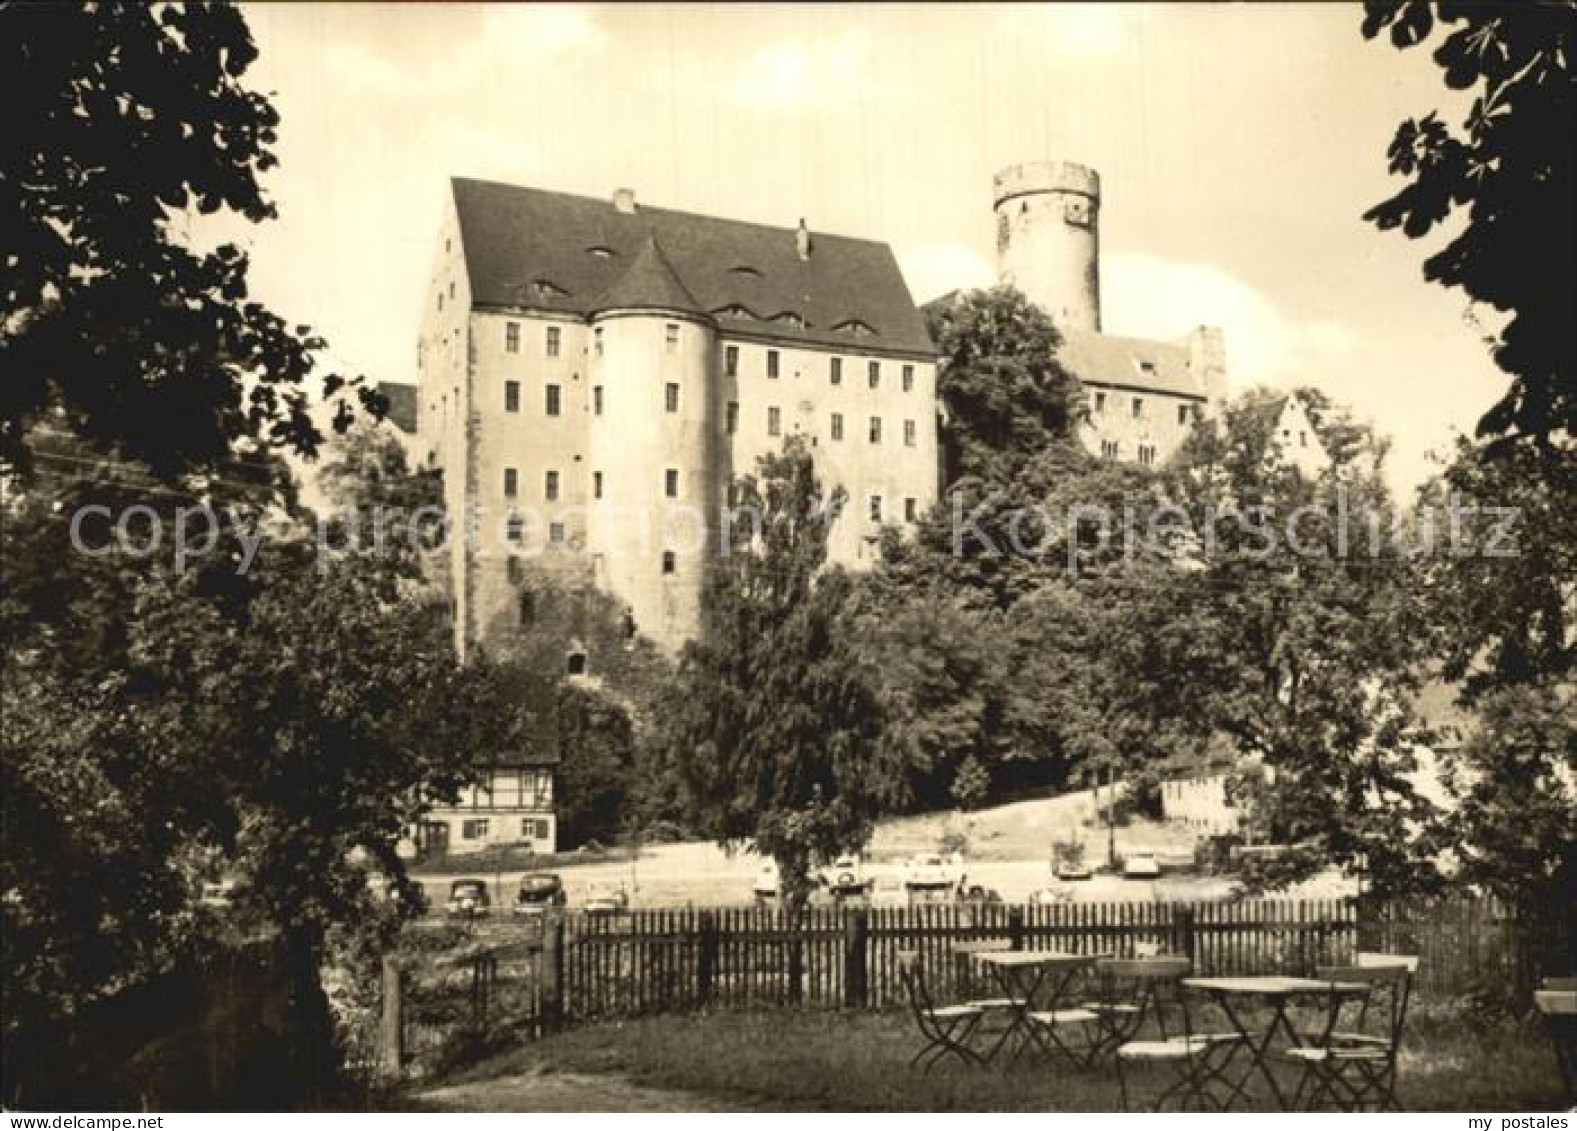 72475466 Gnandstein Burg Gnandstein - Kohren-Sahlis